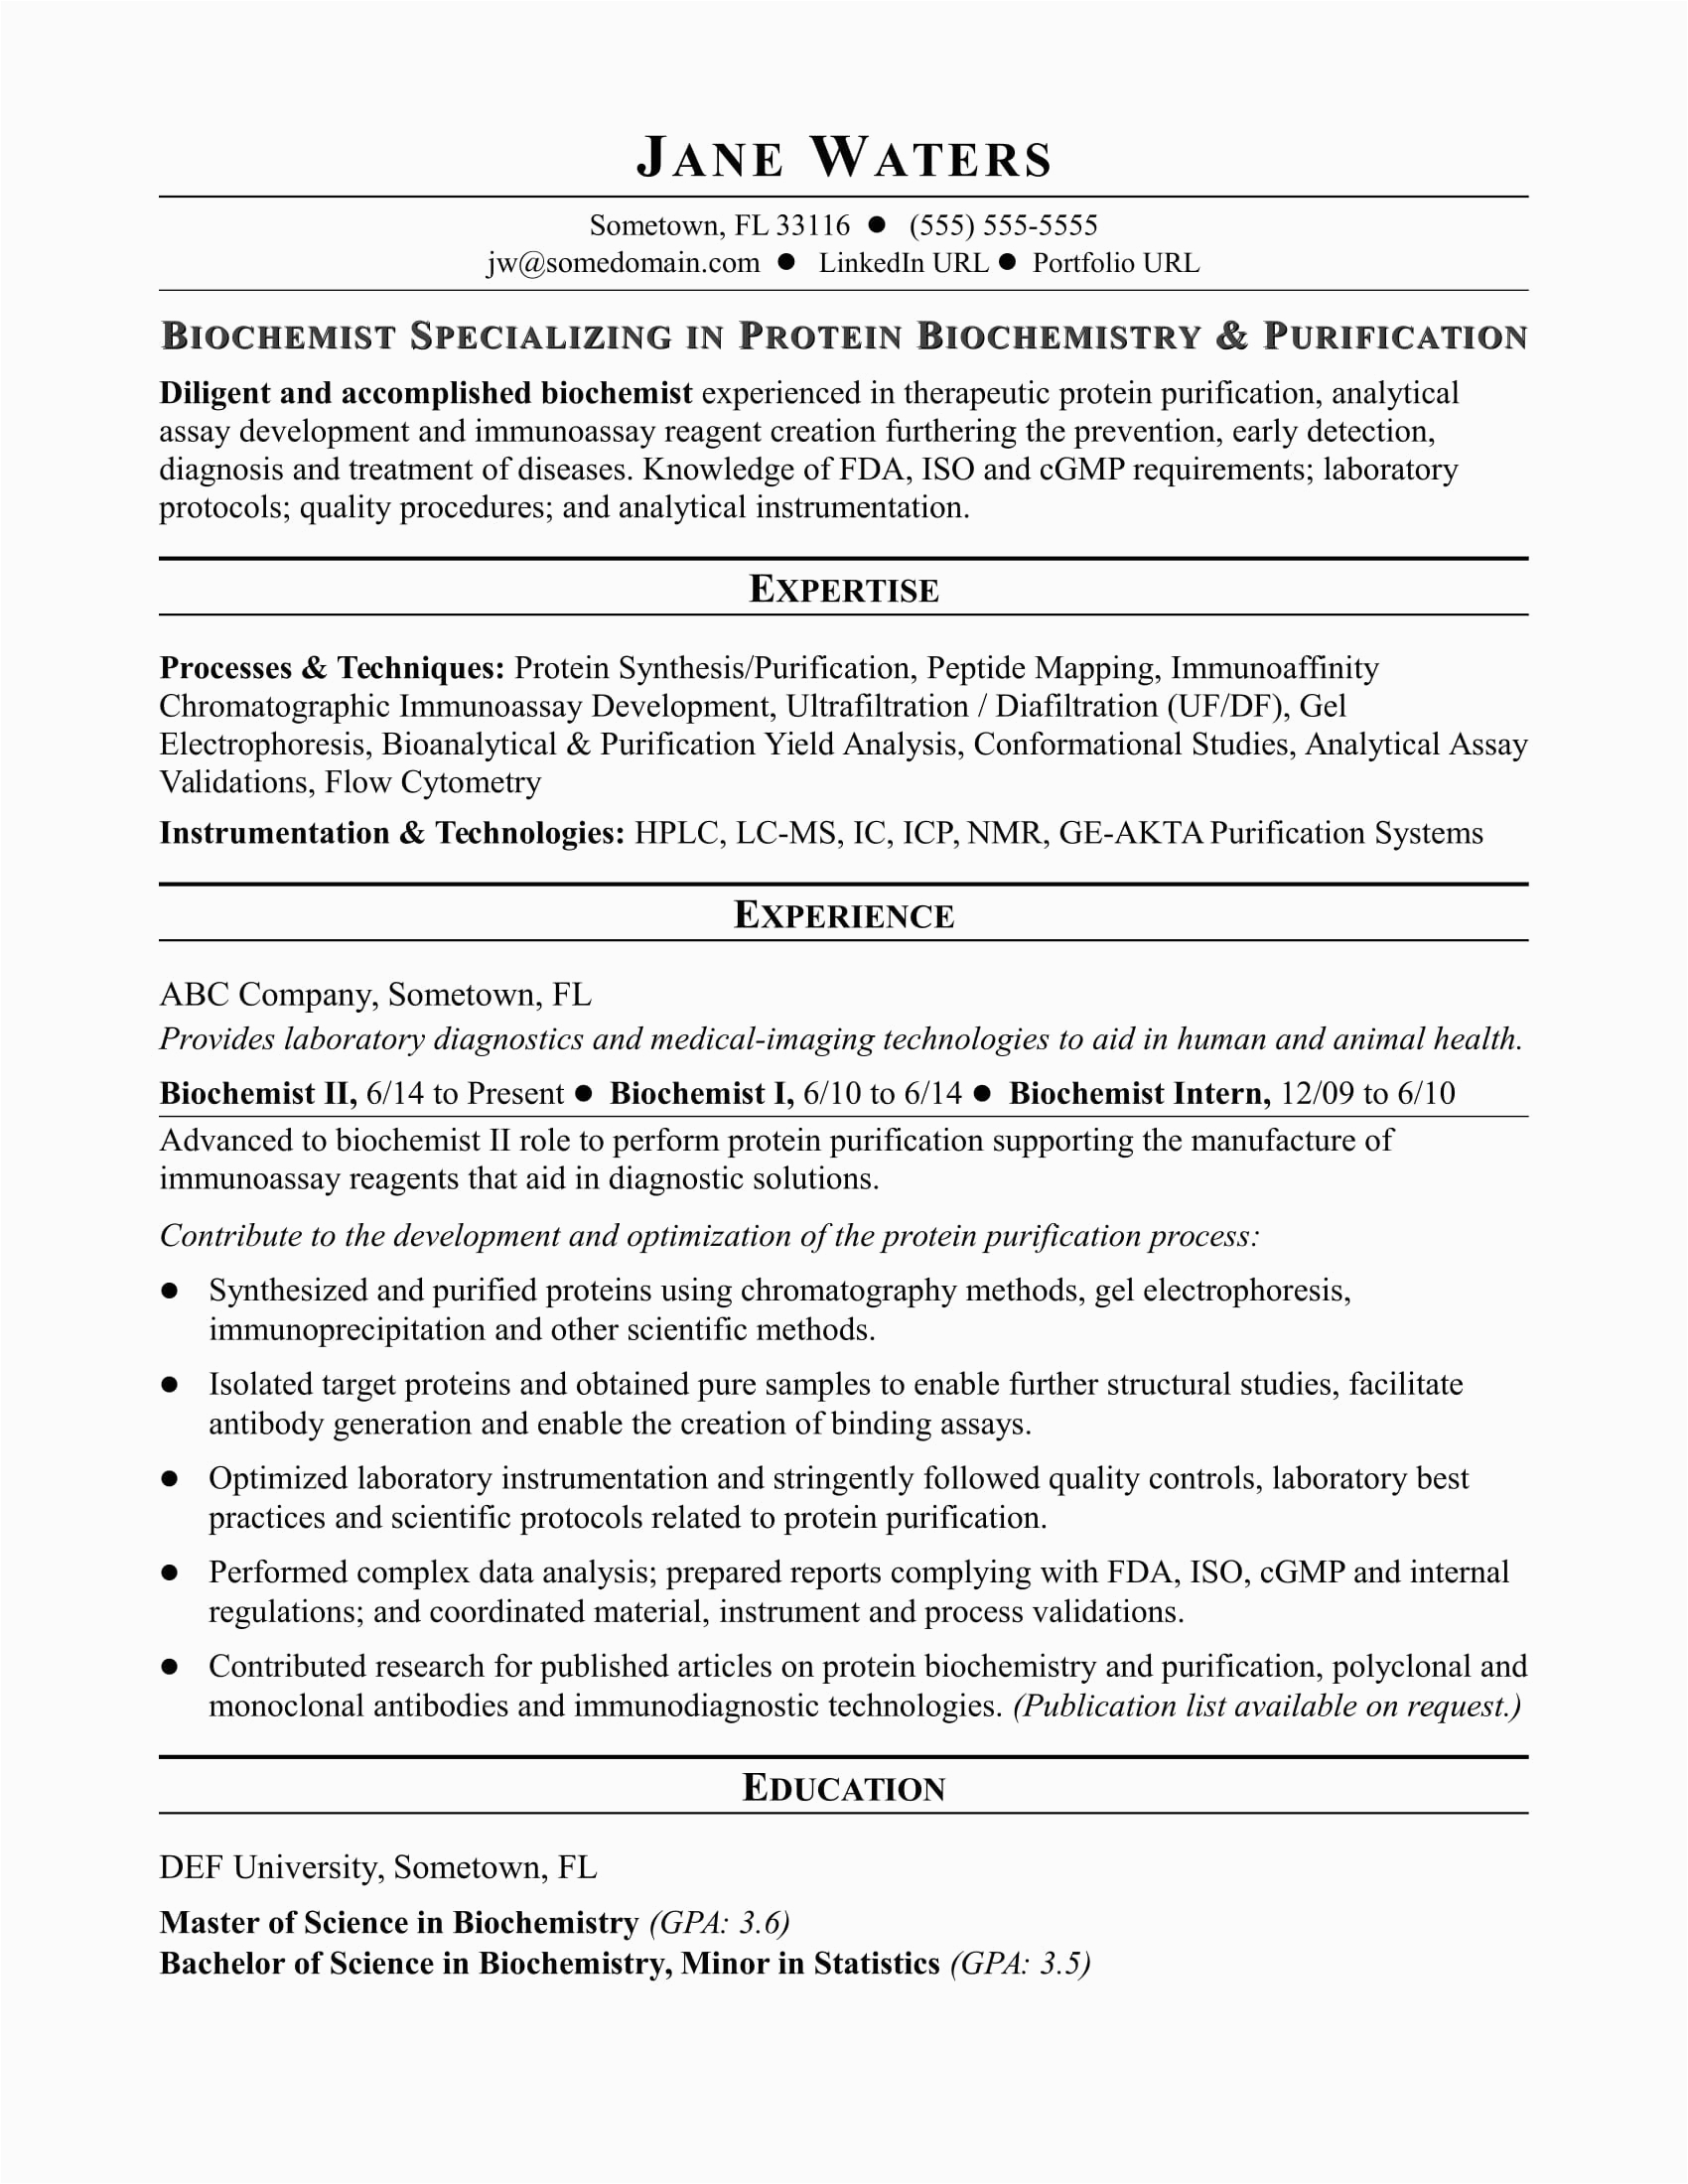 Sample Resume for Biomaker Development and assays Biochemist Resume Sample